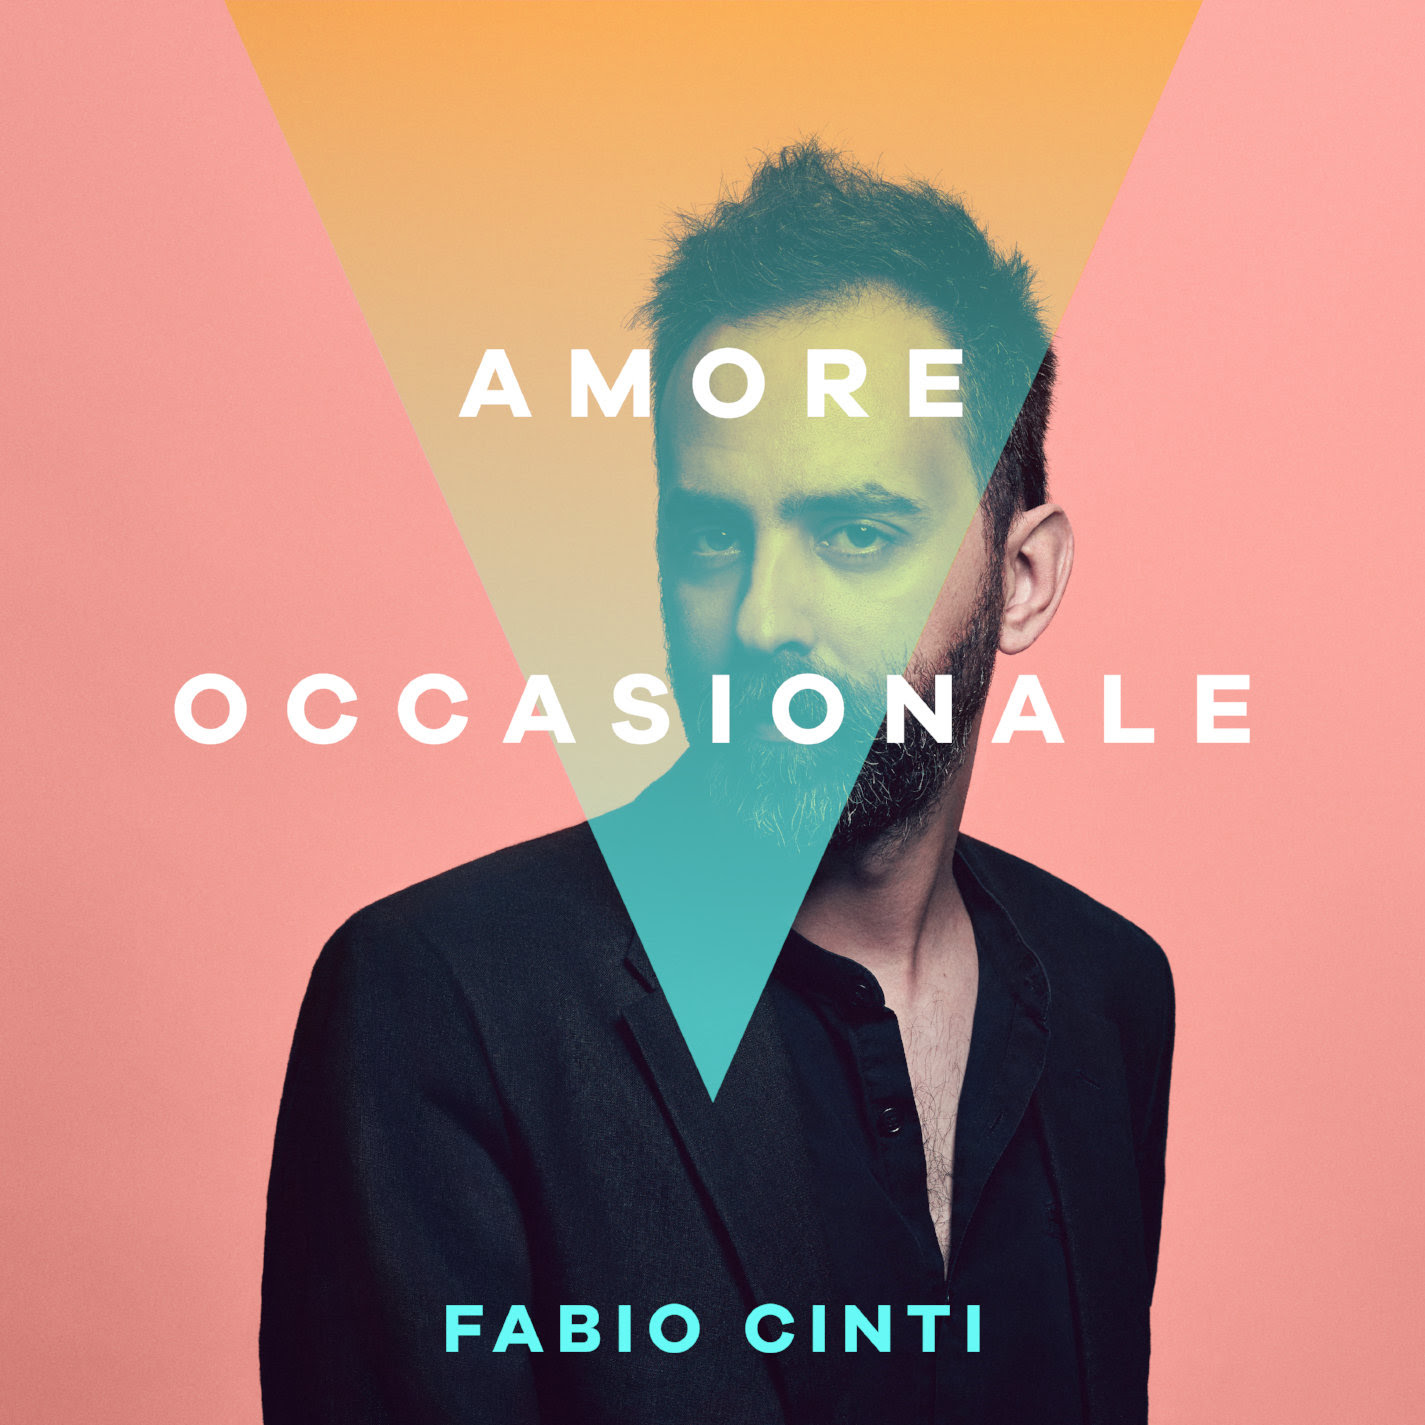  Fabio Cinti, ecco il video di “Amore Occasionale”